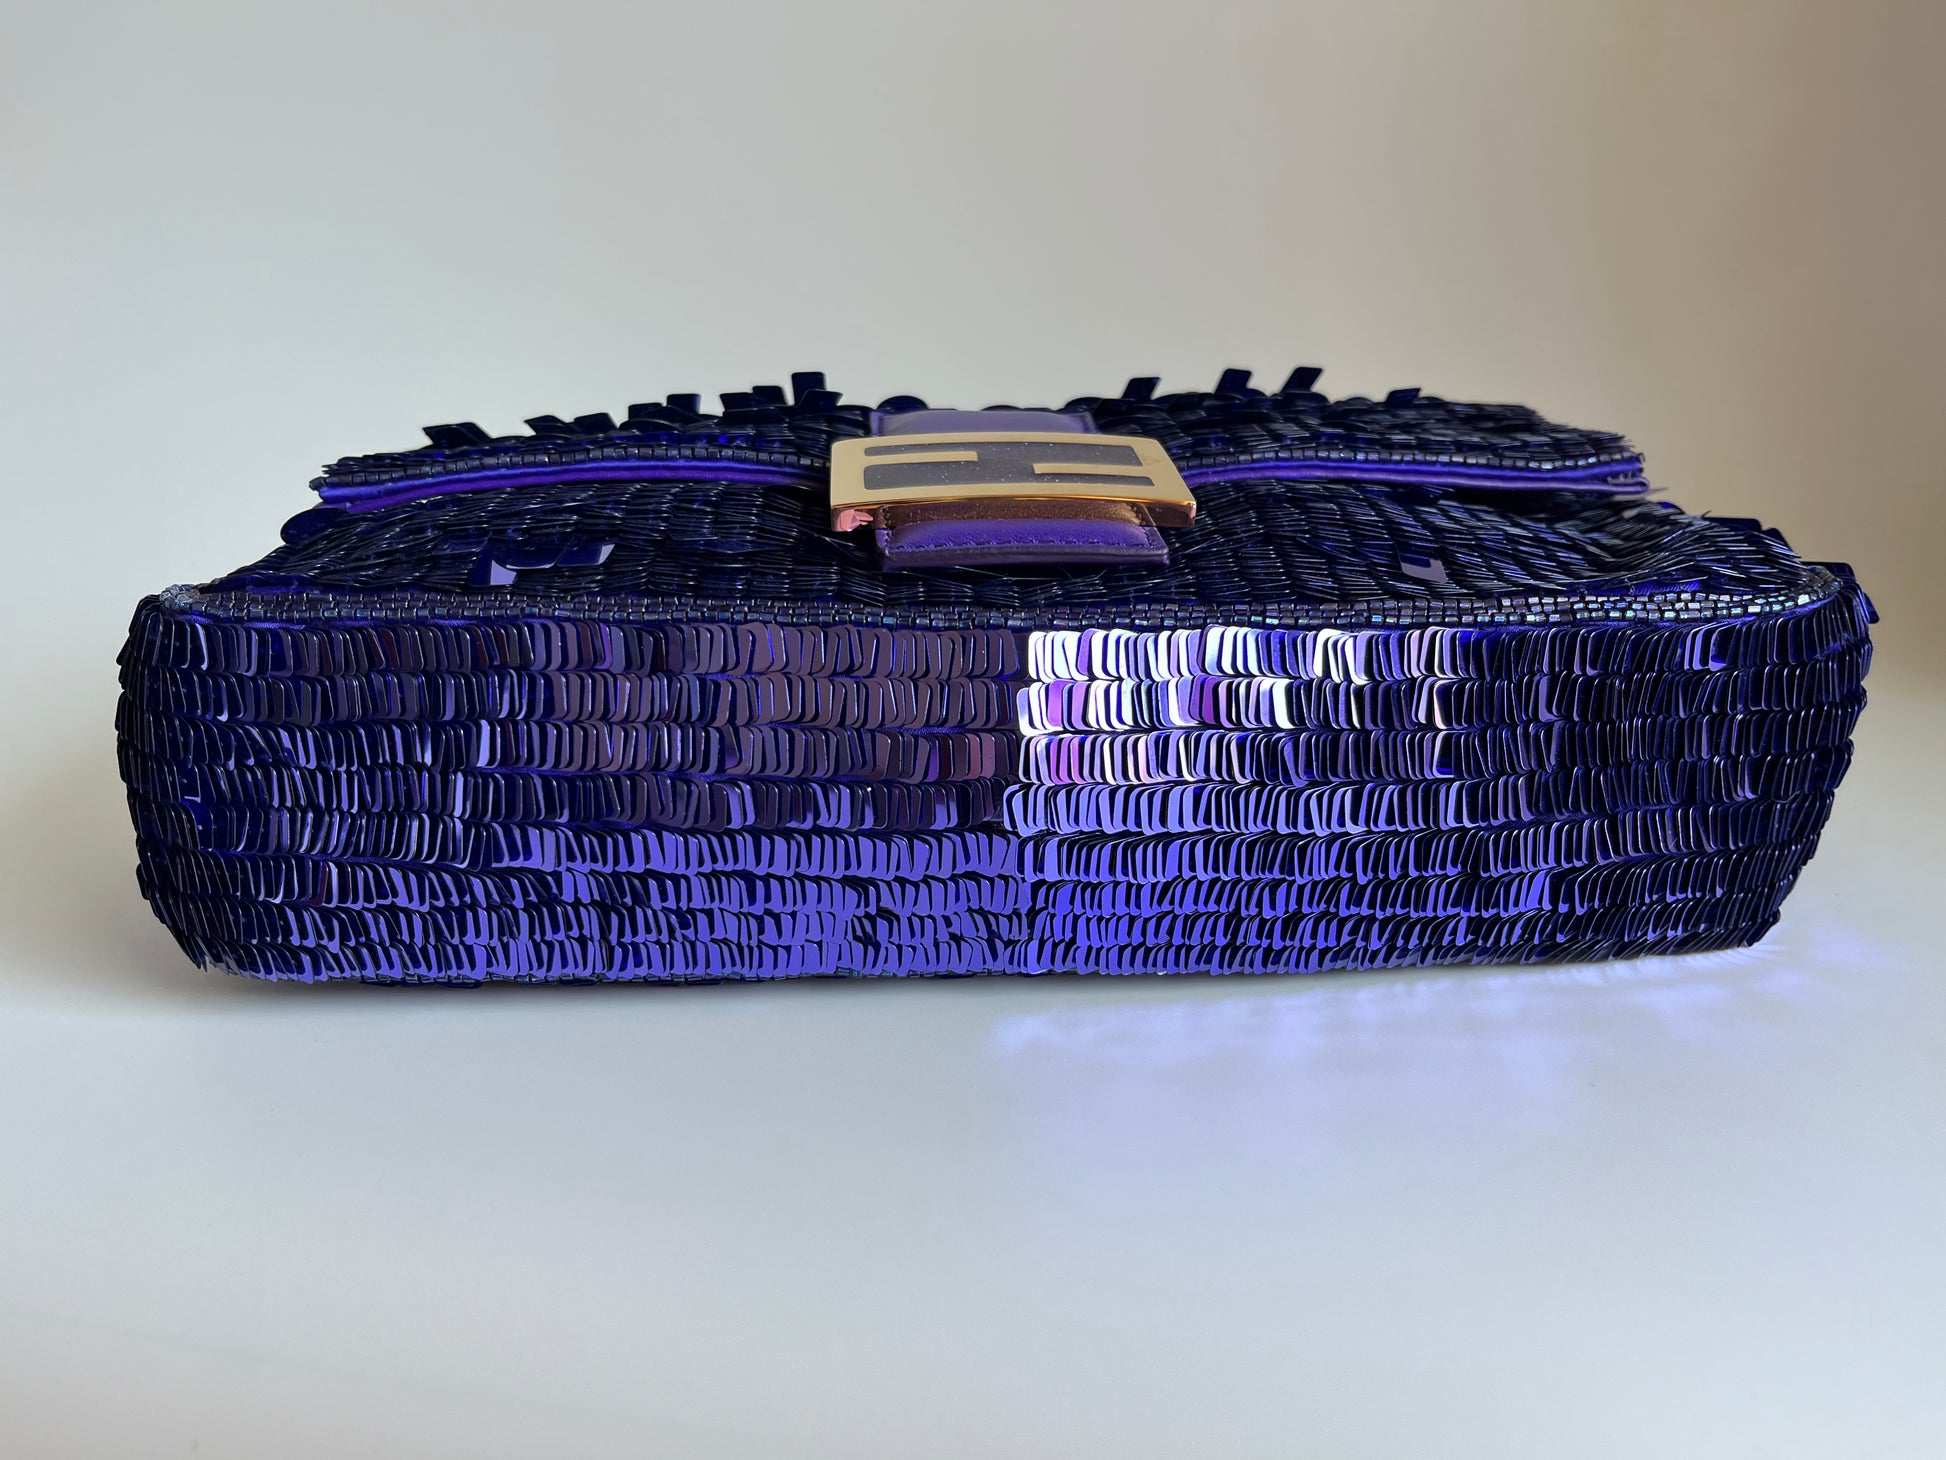 Fendi 2022 Re-Edition Sex and the City Sequin Baguette - Purple Handle  Bags, Handbags - FEN266153